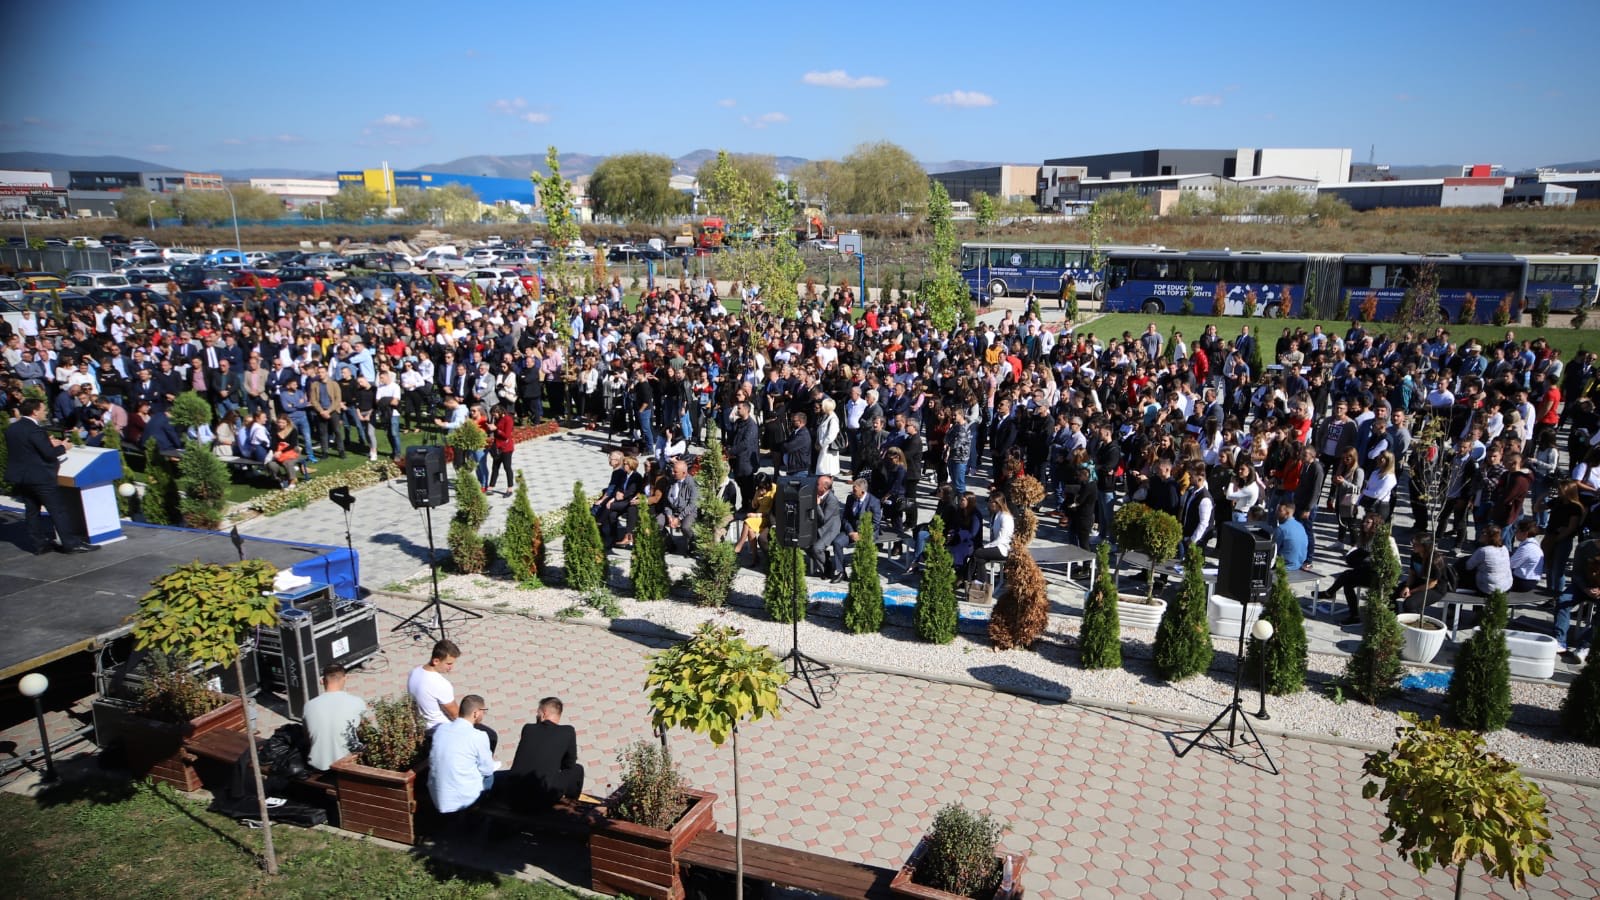 Në Ditën Ndërkombëtare të Rinisë, UBT lanson kampanjën “Është radha ime për Kosovën”